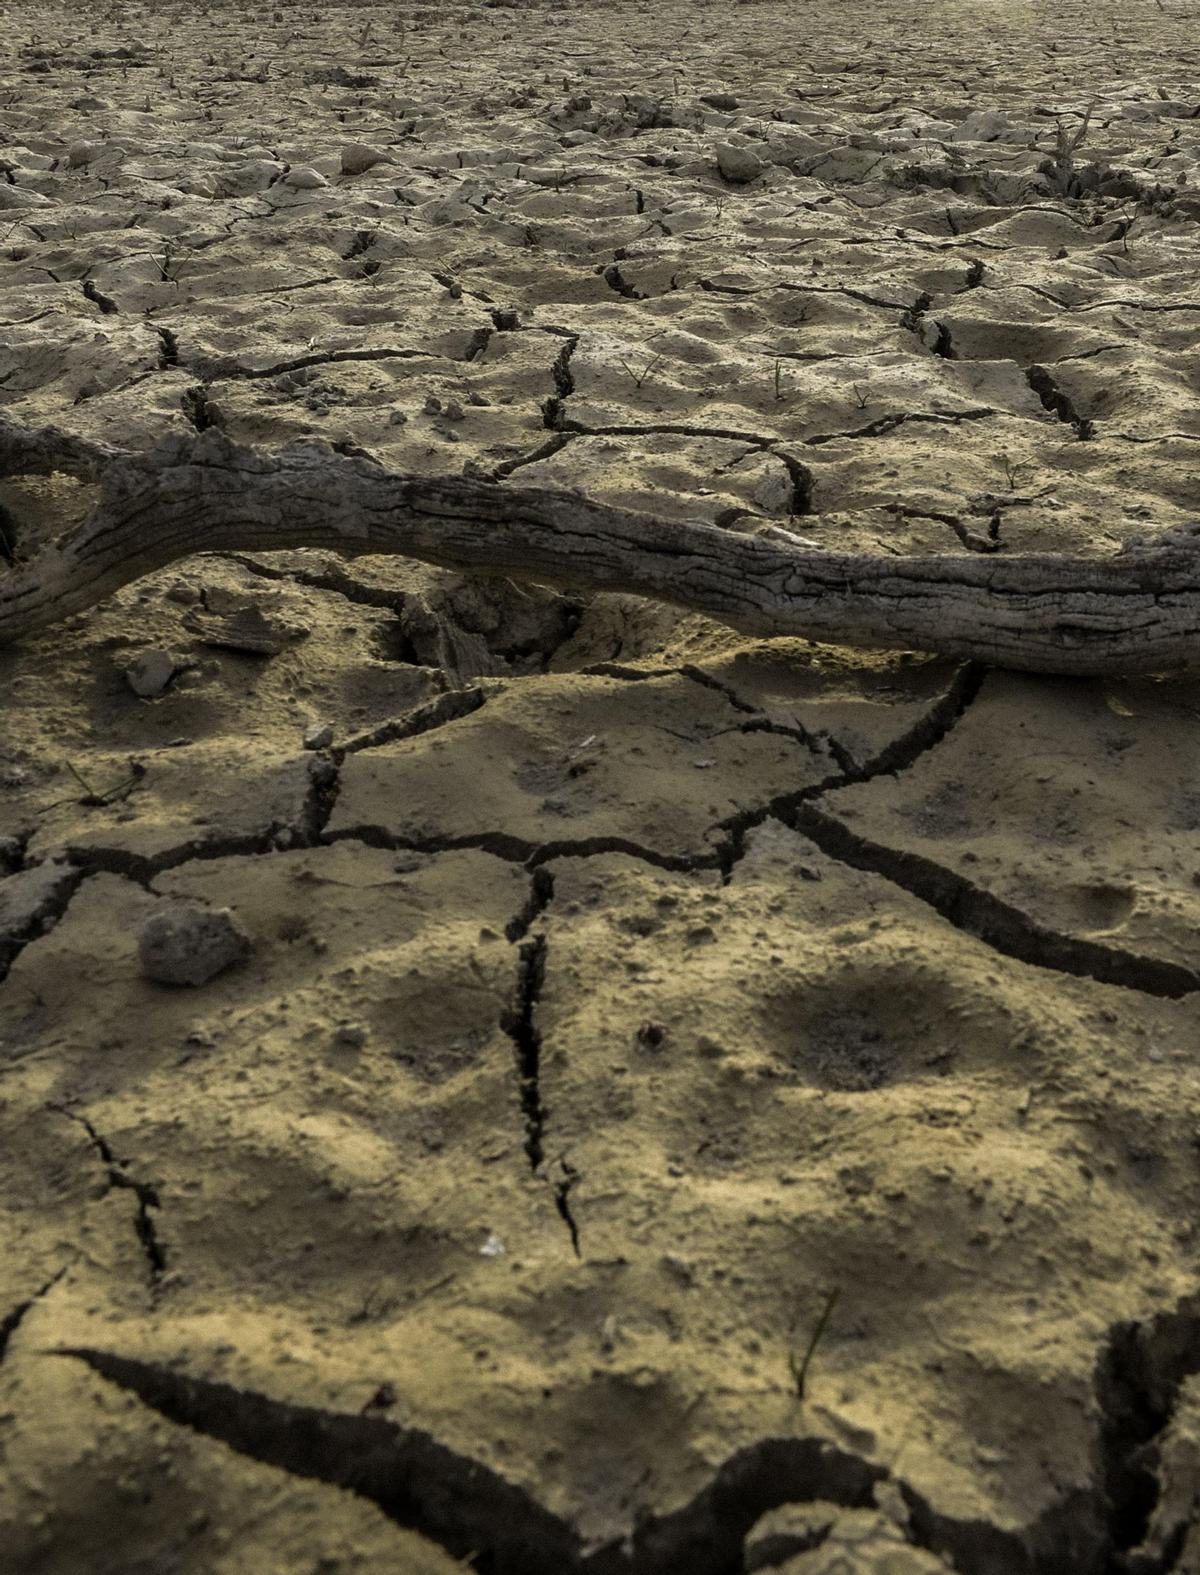 La Aemet ha alertado de que el suelo está extremadamente seco en la franaja Mediterránea por la falta de lluvia.